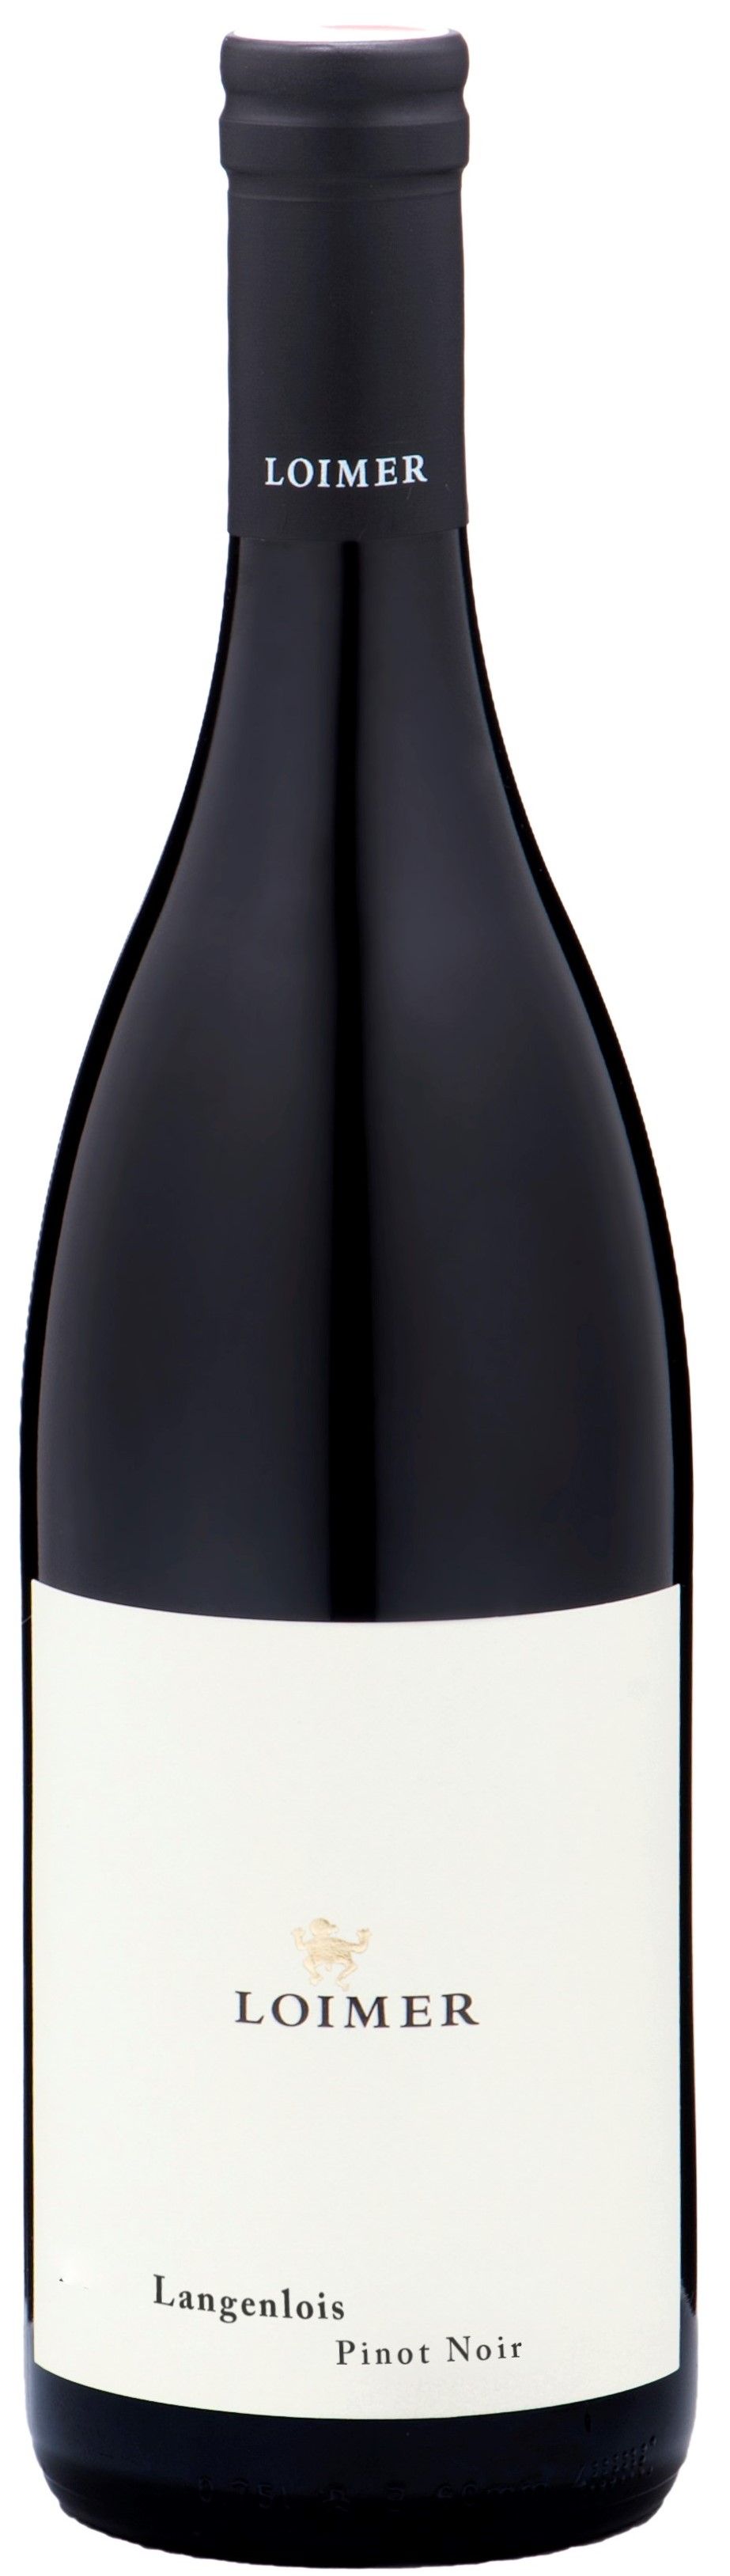 Loimer, Langenlois Pinot Noir, 2015